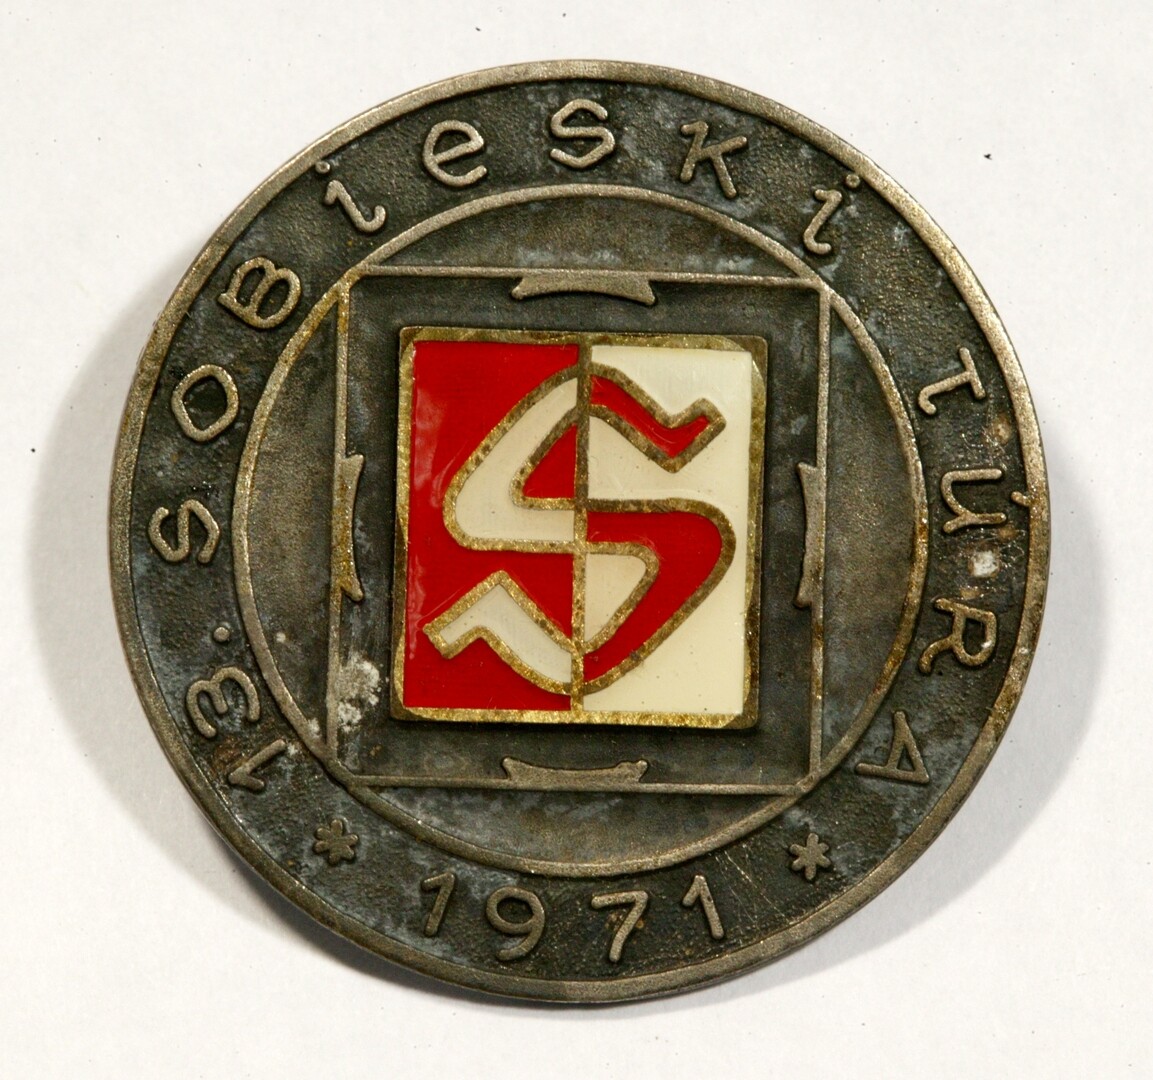 Sobieski Emléktúra jelvénye, 1971 (Magyar Környezetvédelmi és Vízügyi Múzeum - Duna Múzeum CC BY-NC-SA)